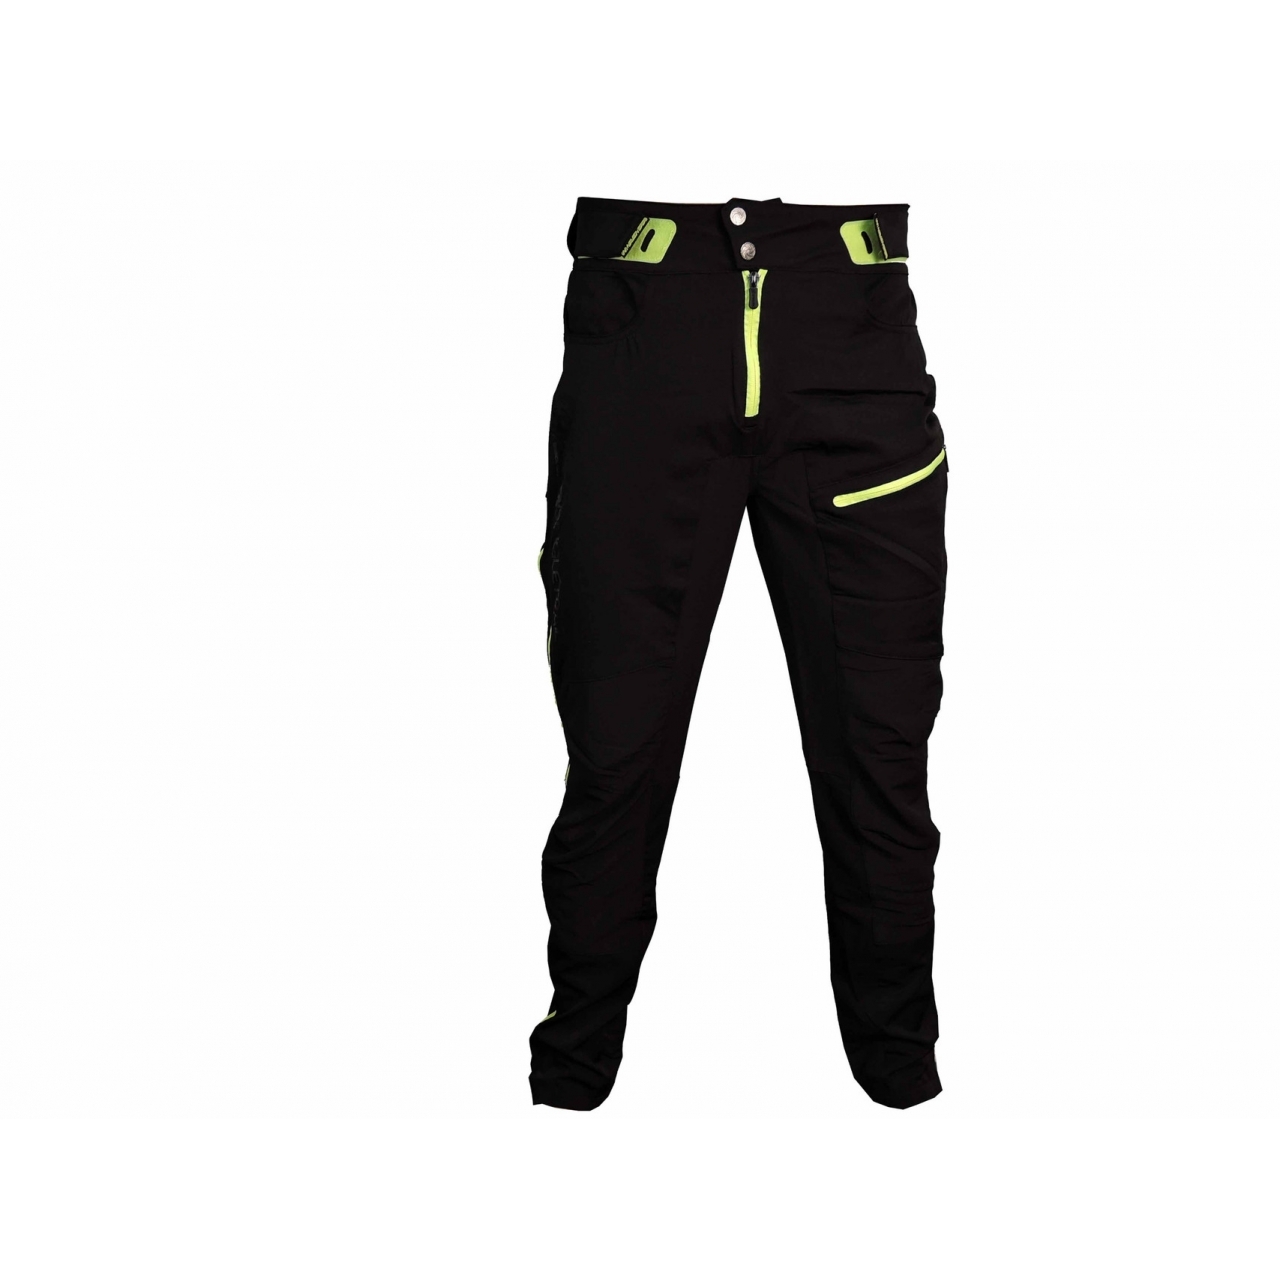 Kalhoty unisex Haven Singletrail - černé-zelené, XL